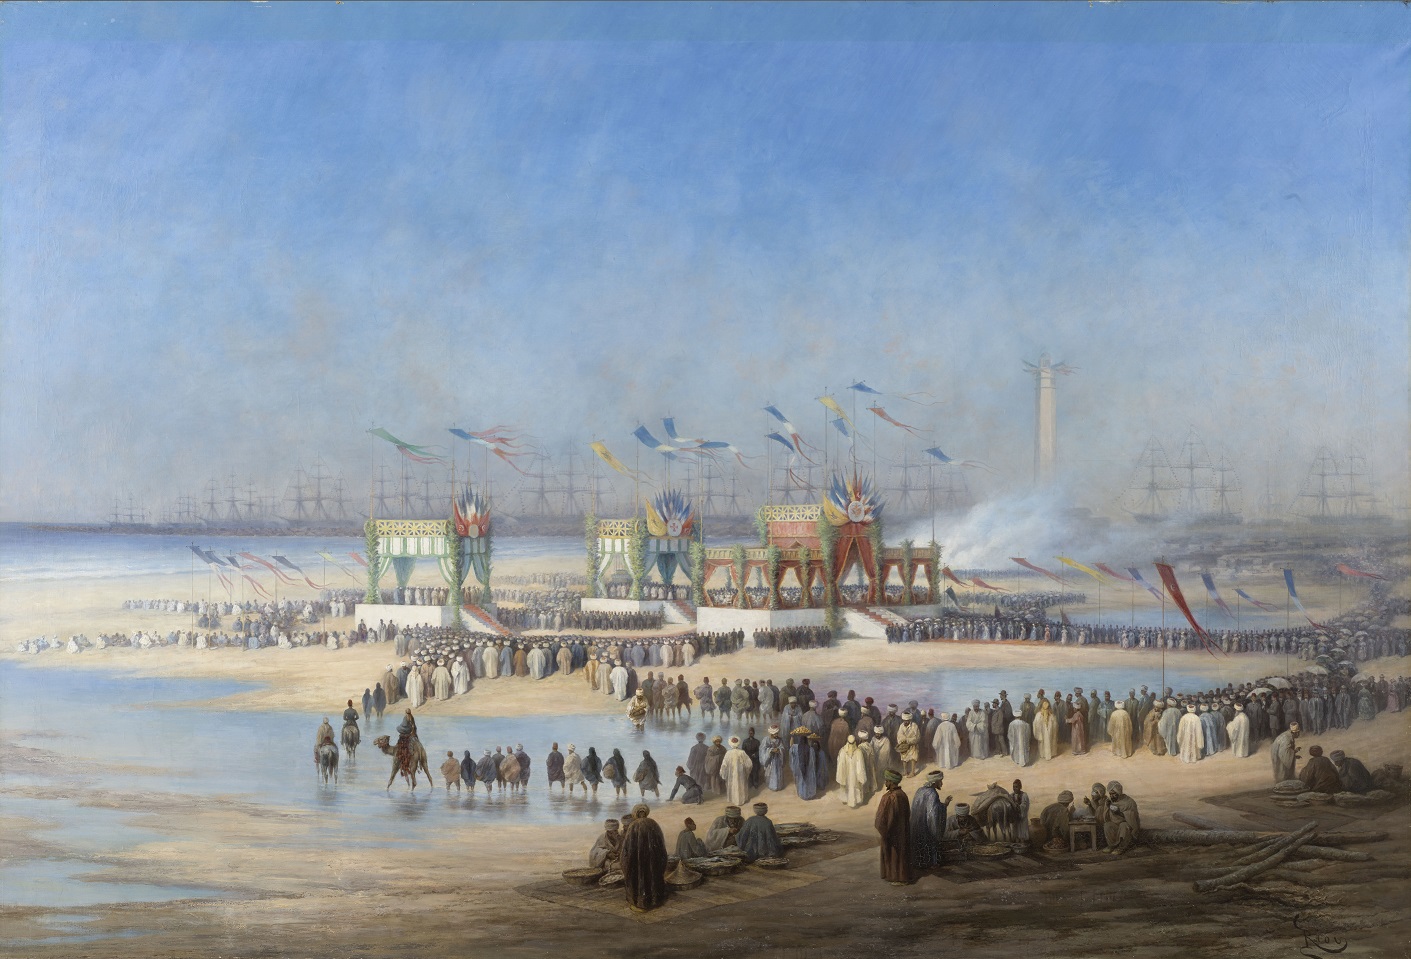 25 APRILE 1859: INIZIO DEI LAVORI DEL CANALE DI SUEZ